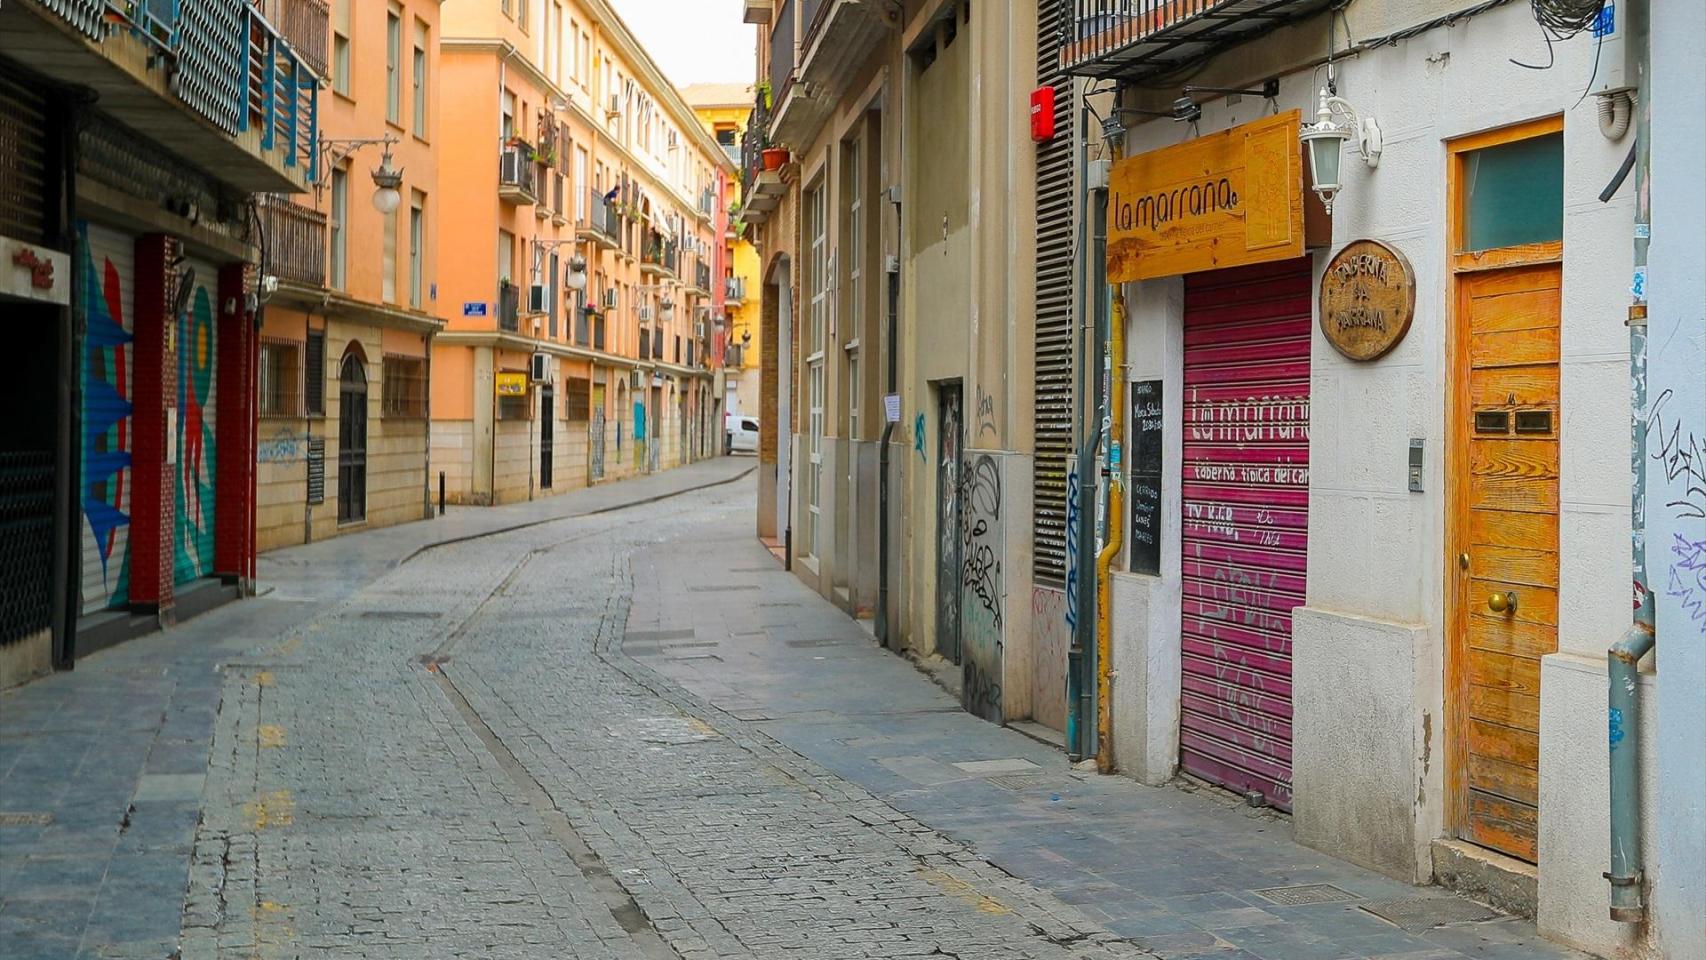 El barrio es uno de los más visitados y concurridos de Valencia. Iván Terrón / Europa Press